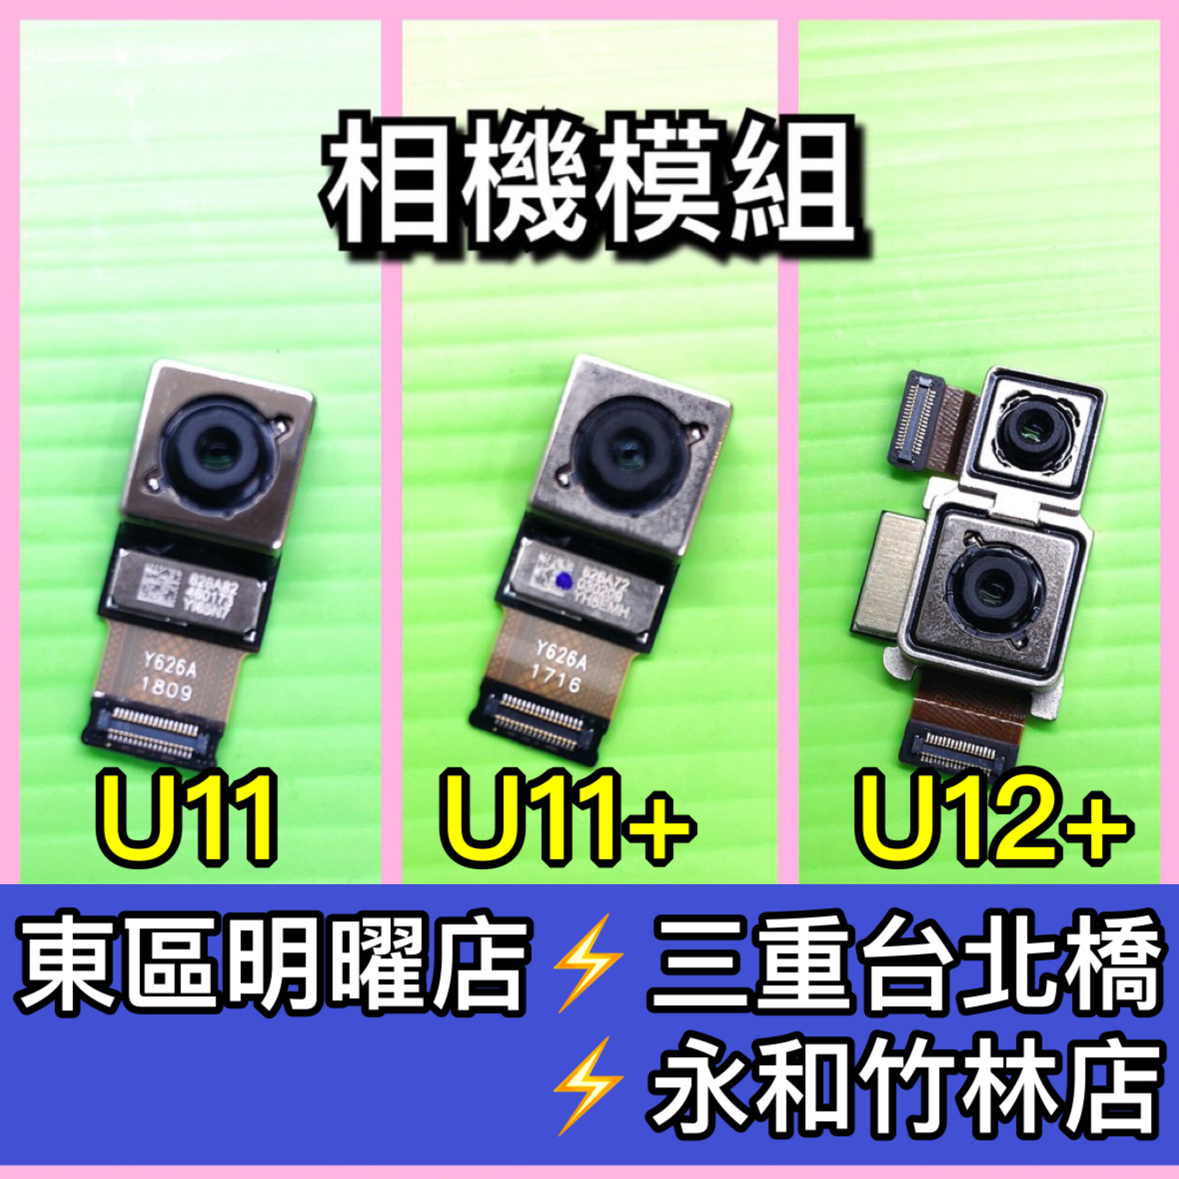 相機 鏡頭適用HTC U11 U11+ U12+ U11 Plus U12 Plus 主相機 主鏡頭